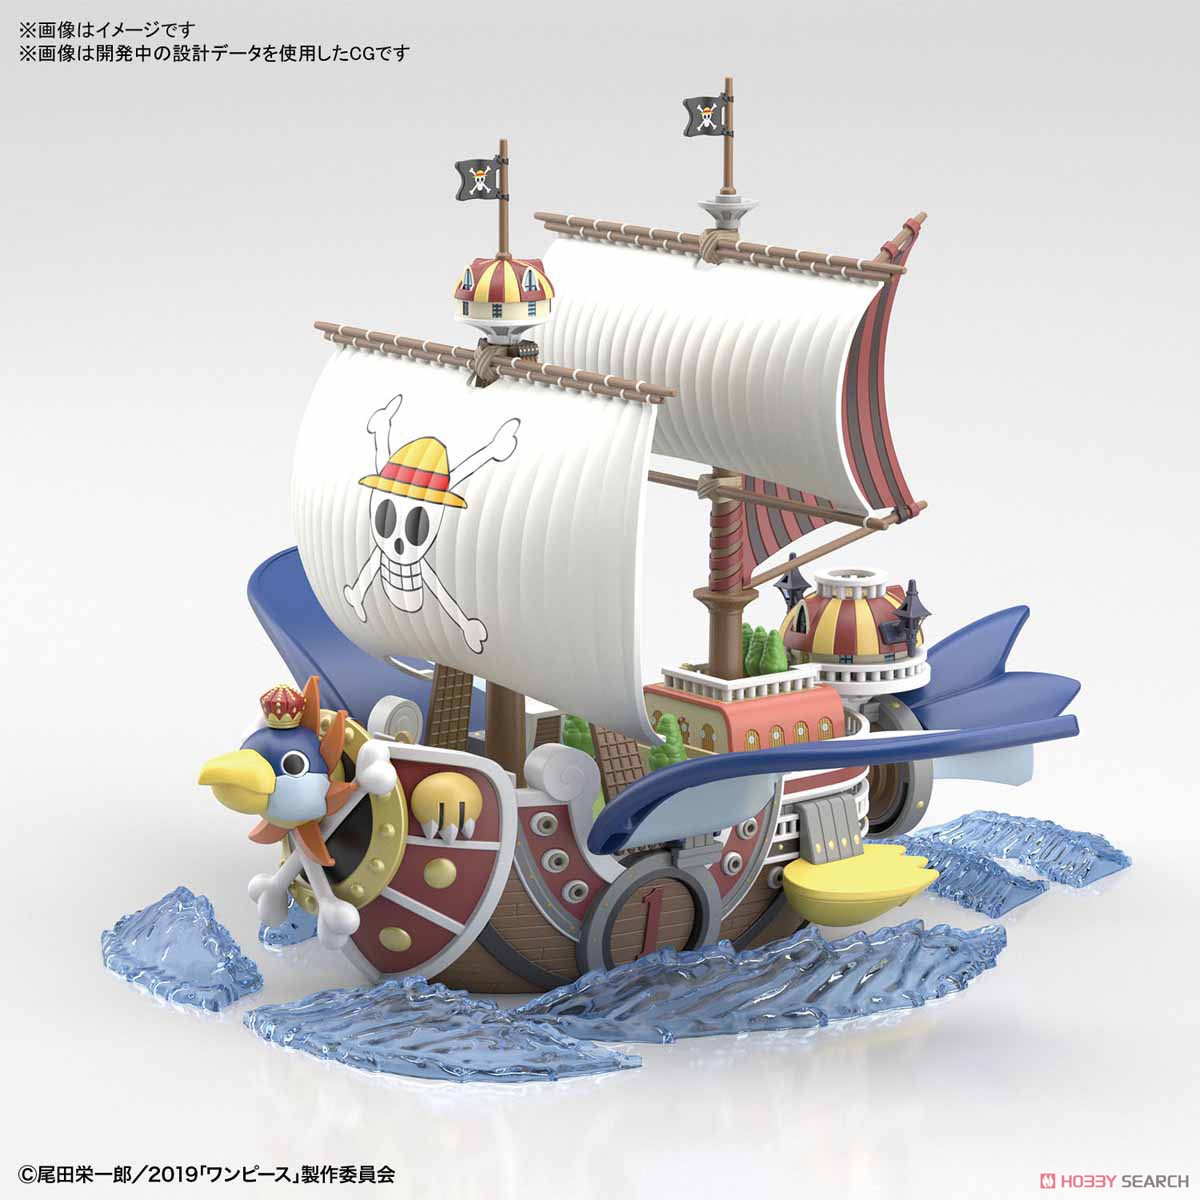 偉大なる船コレクション『サウザンド・サニー号 フライングモデル』ワンピース プラモデル-003